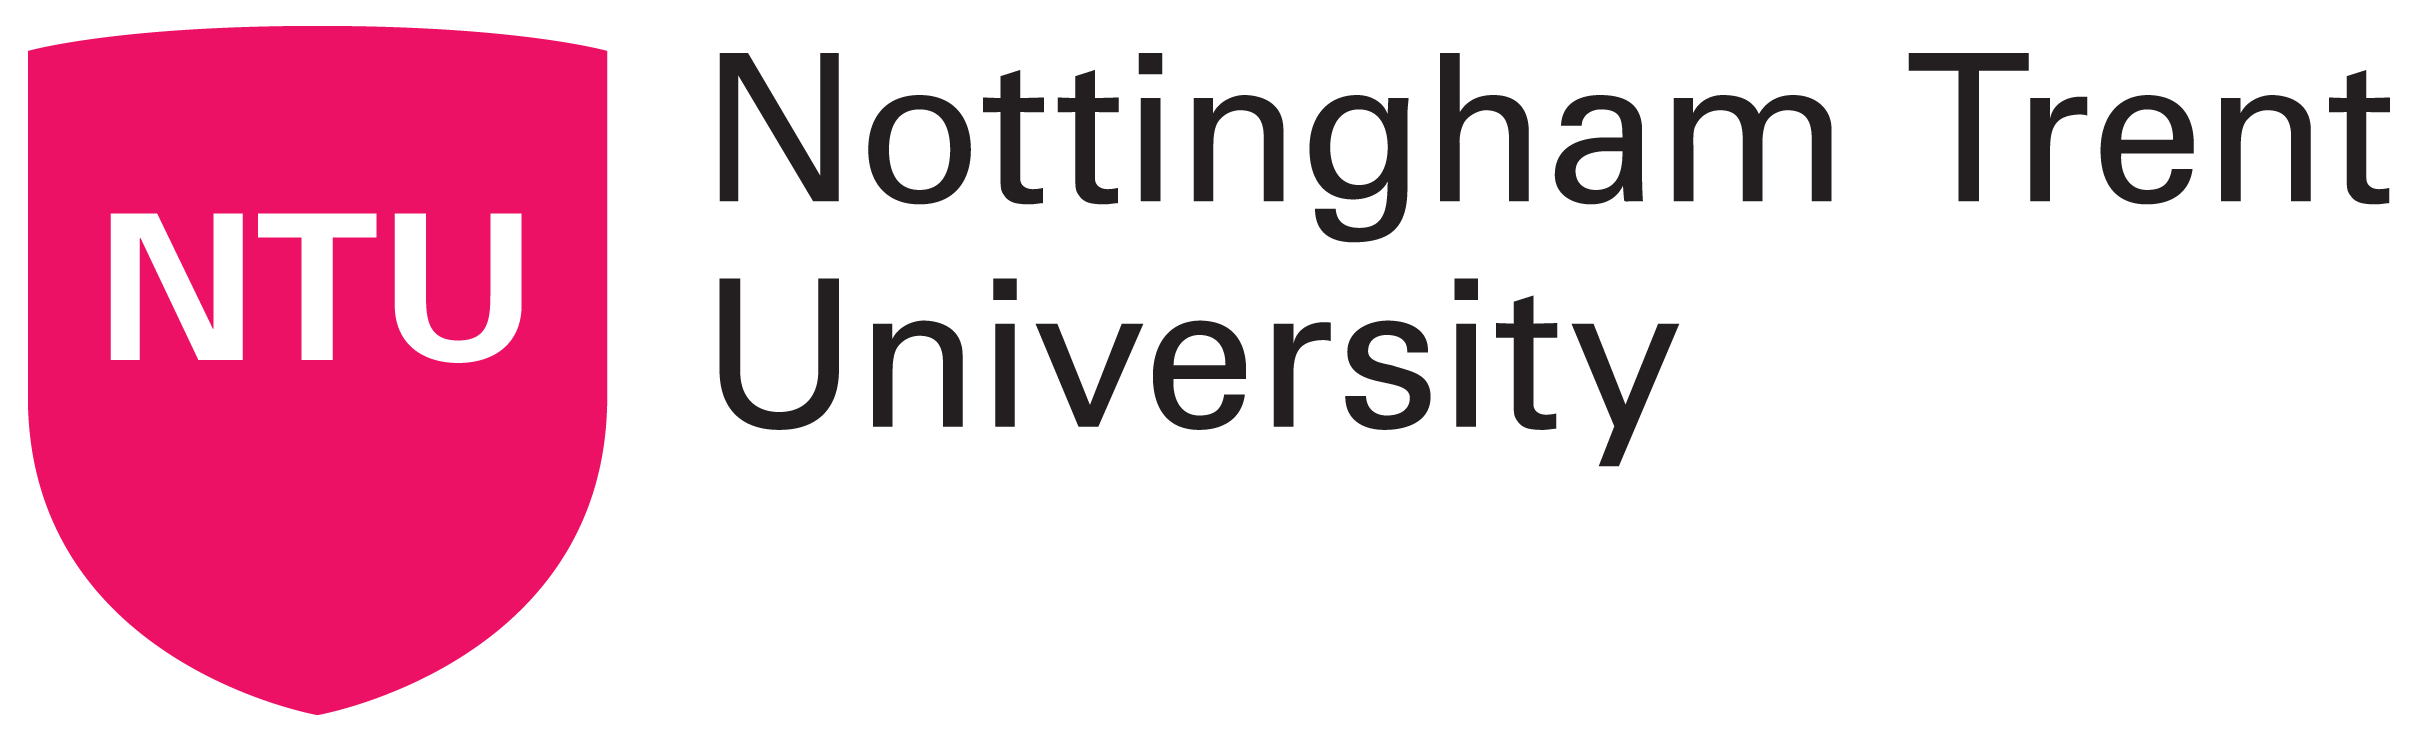 Nottingham-Trent-University-logo-2